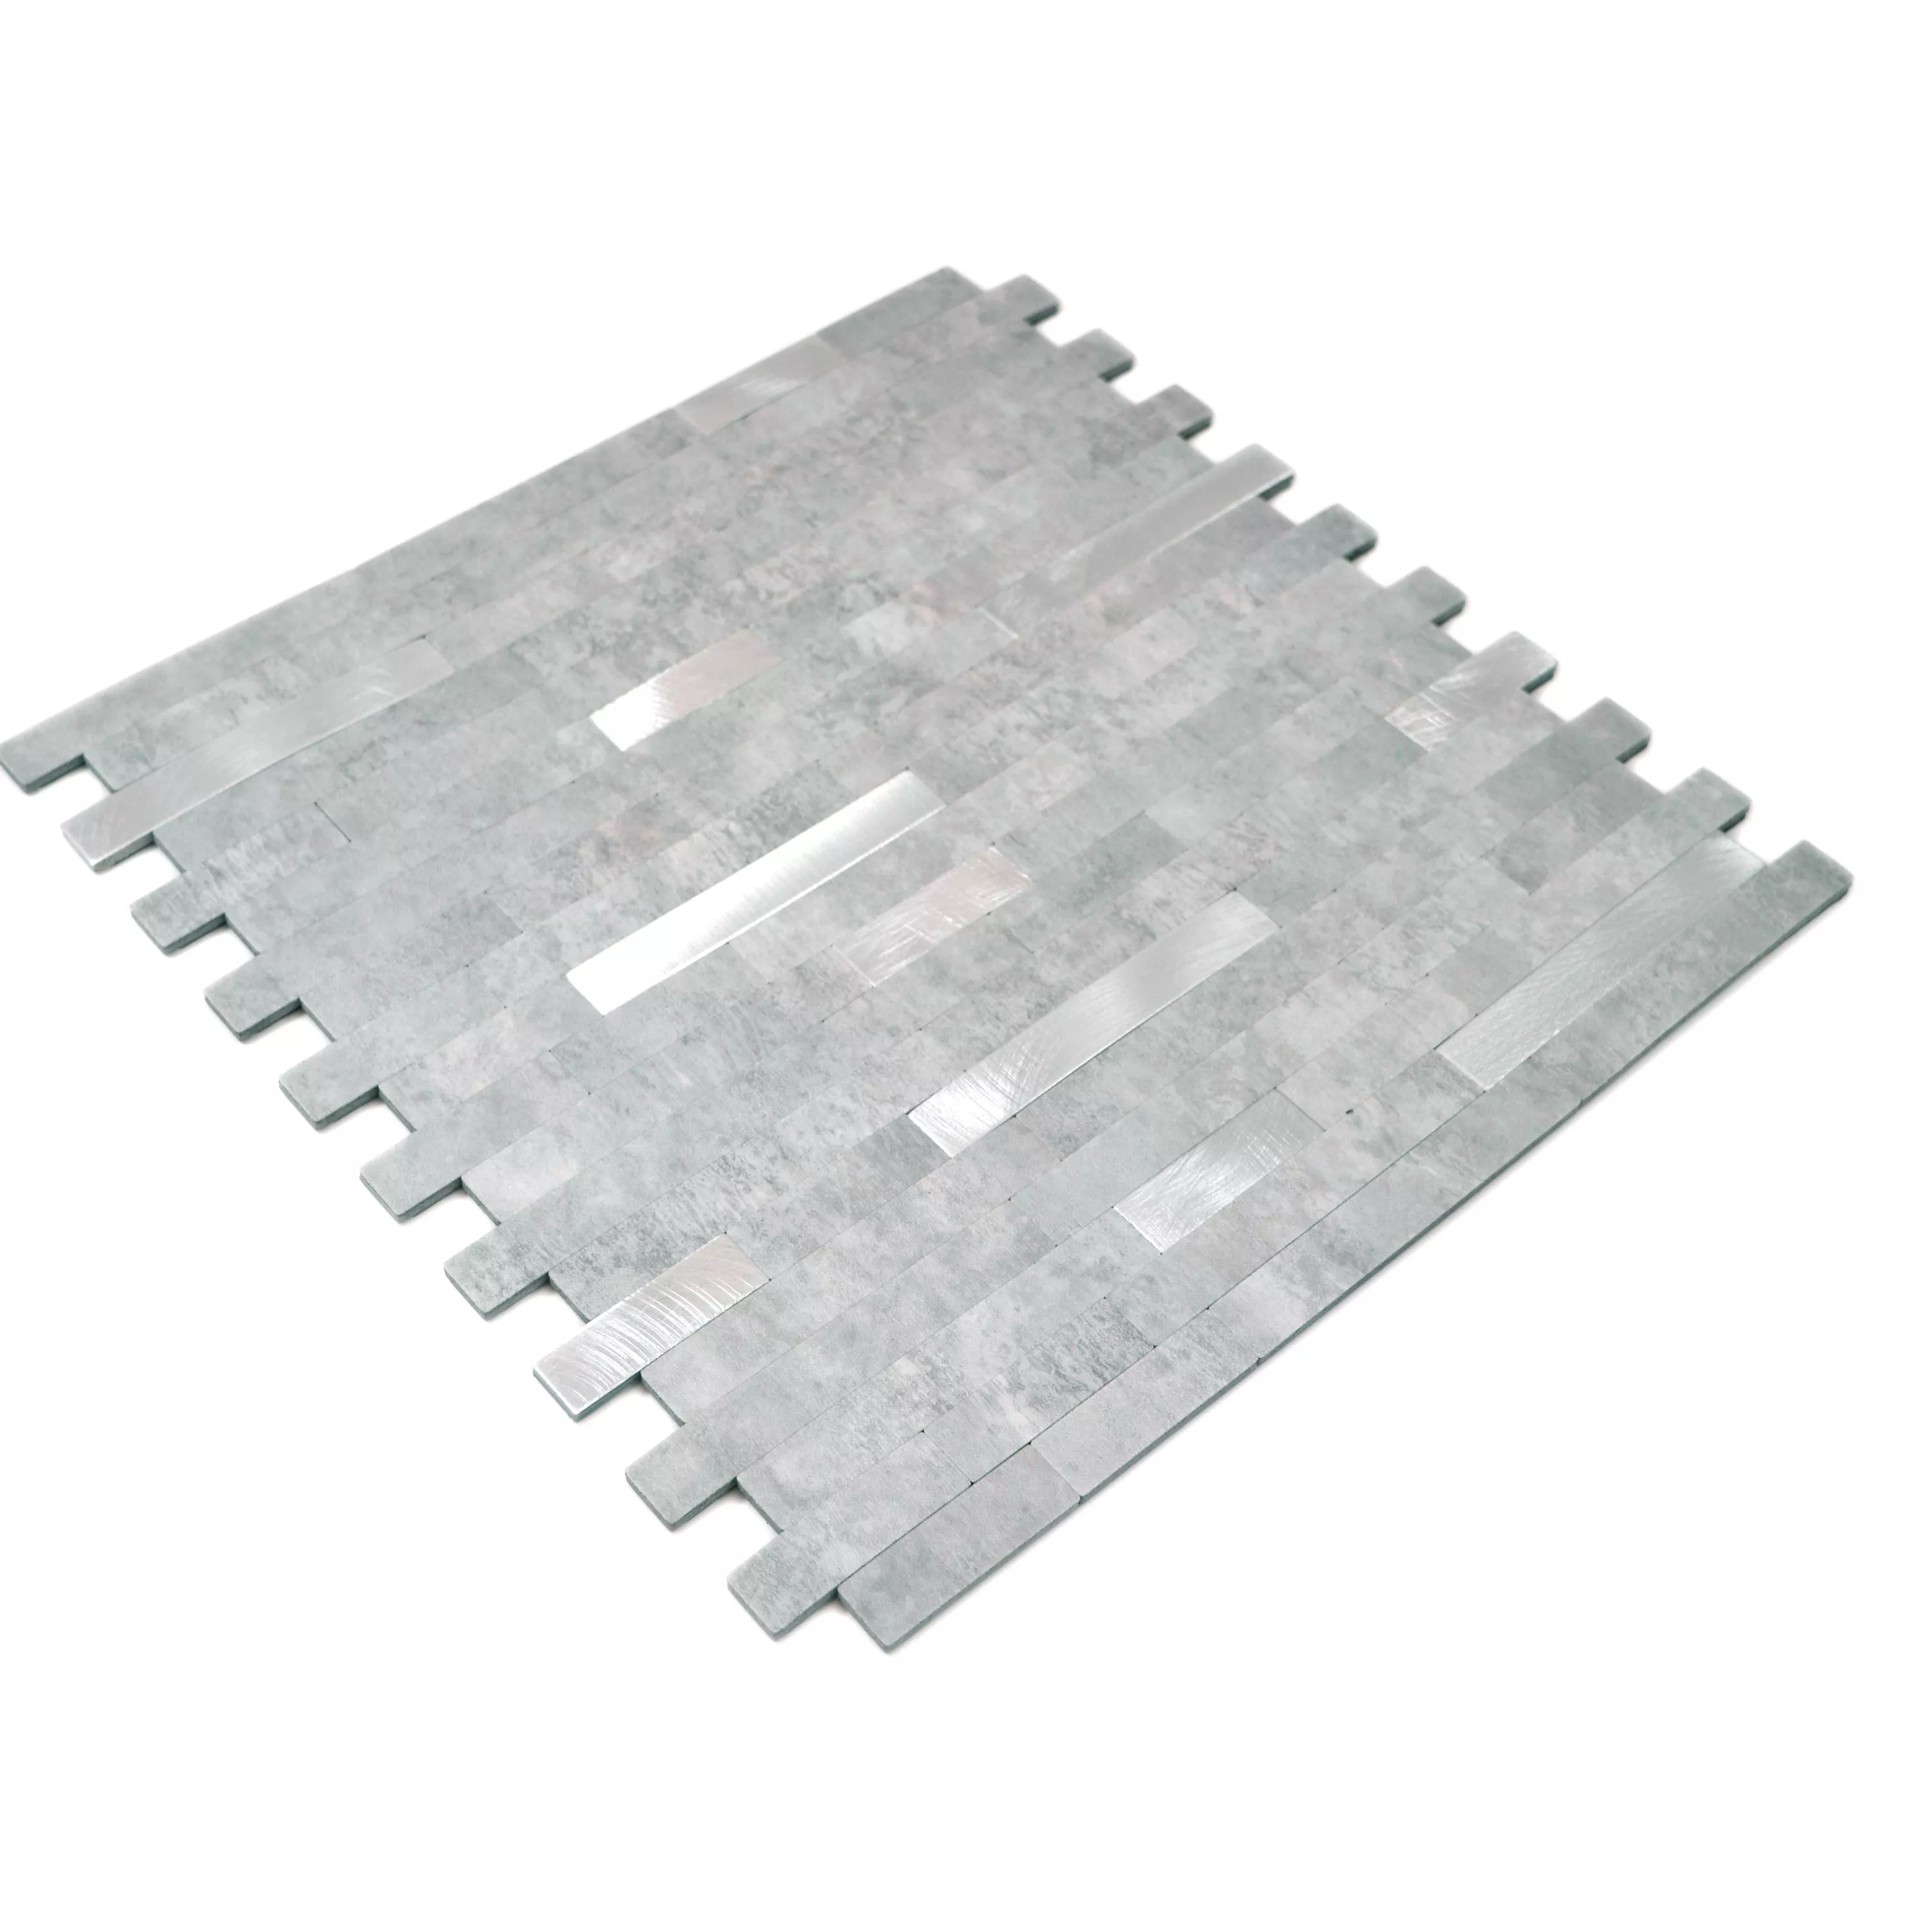 Vinyl Mosaic Tiles Maywald Self Adhesive Grey Silver